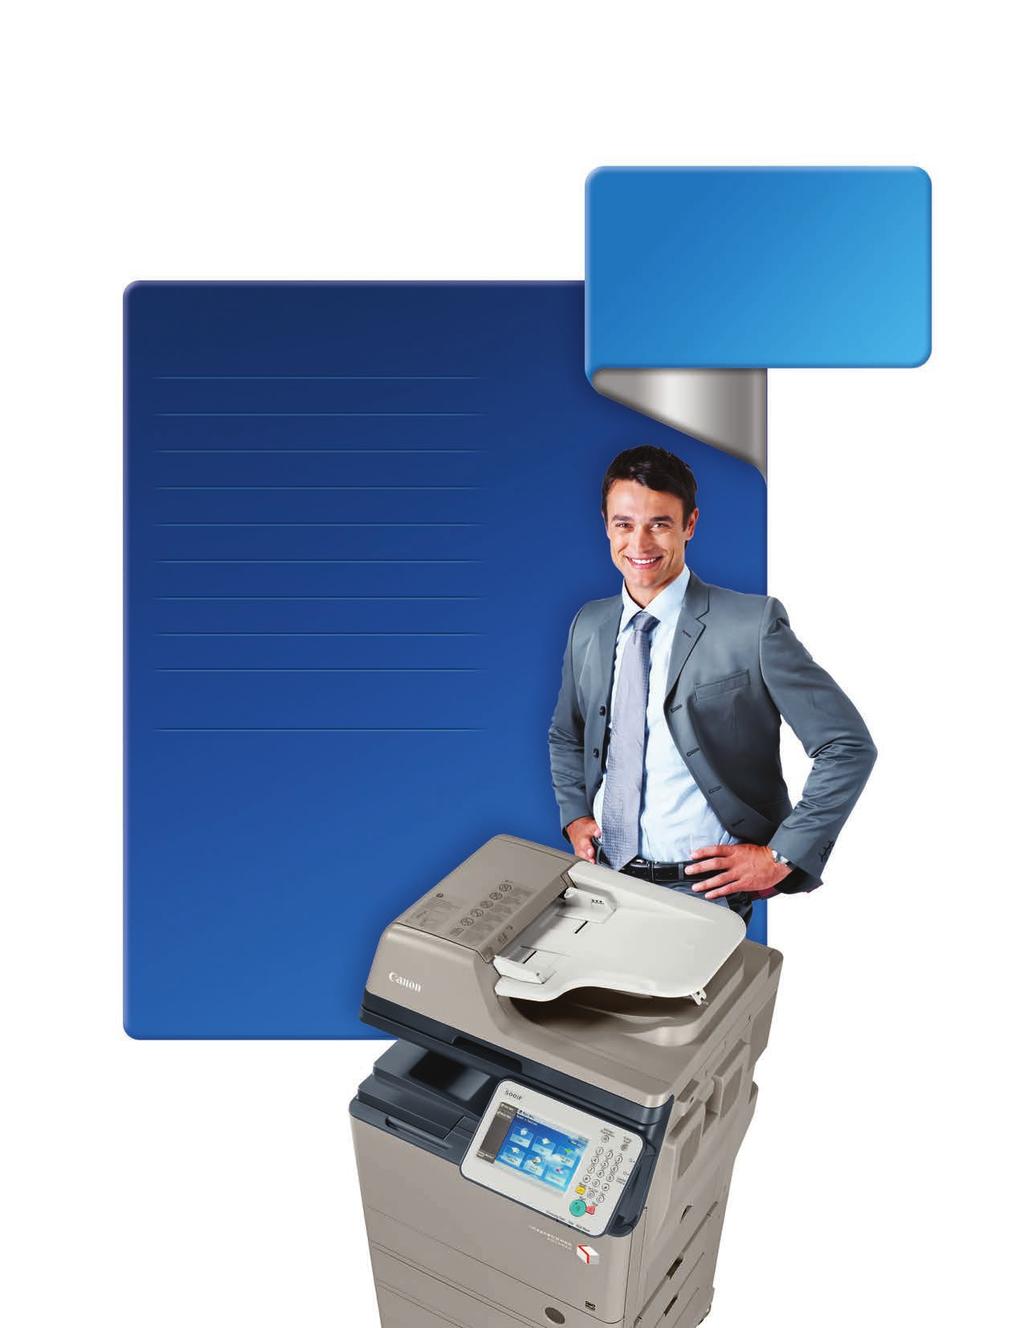 Diseñada para Características estándares Copiado/impresión/envío/fax* Grupos de trabajo ocupados que requieren un flujo de trabajo avanzado en un espacio compacto Impresión y copiado en B y N Escaneo